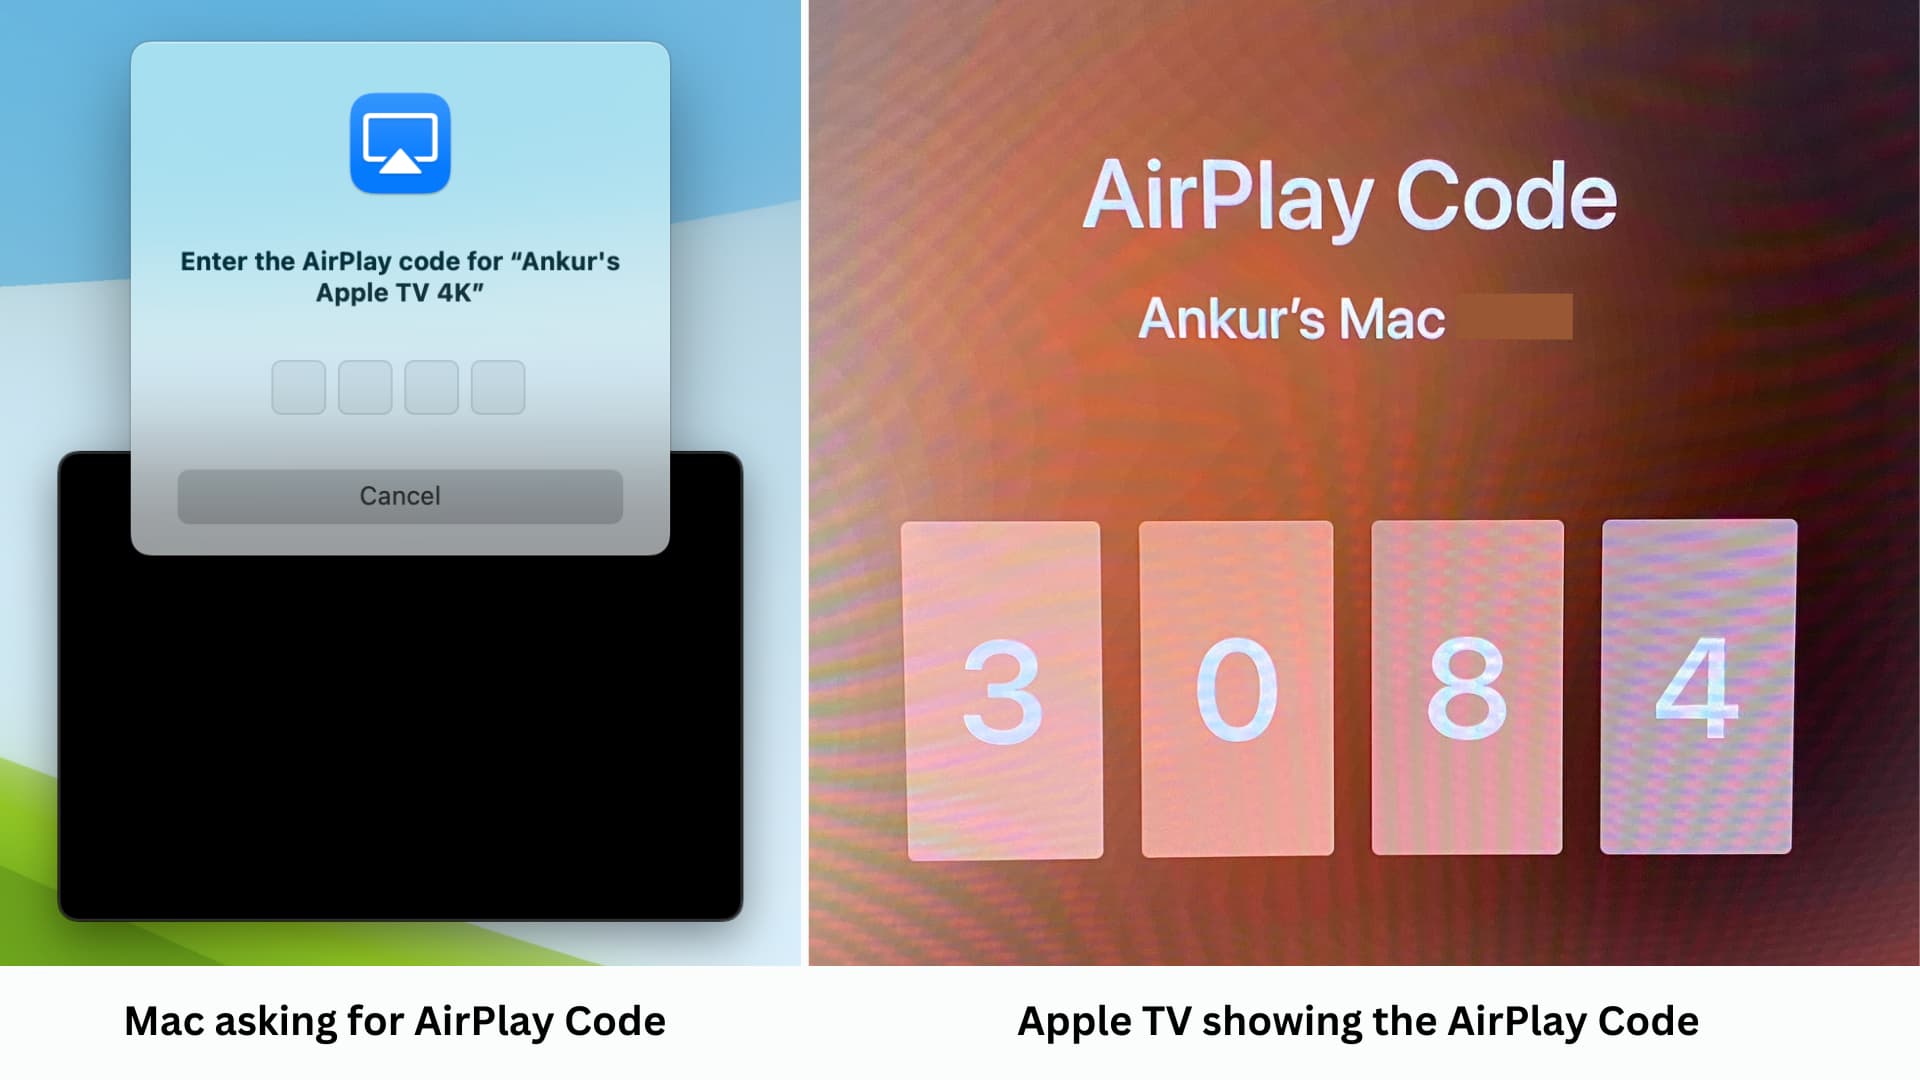 Mac demandant le code AirPlay et Apple TV montrant ce code à quatre chiffres qui doit être saisi sur Mac pour confirmation